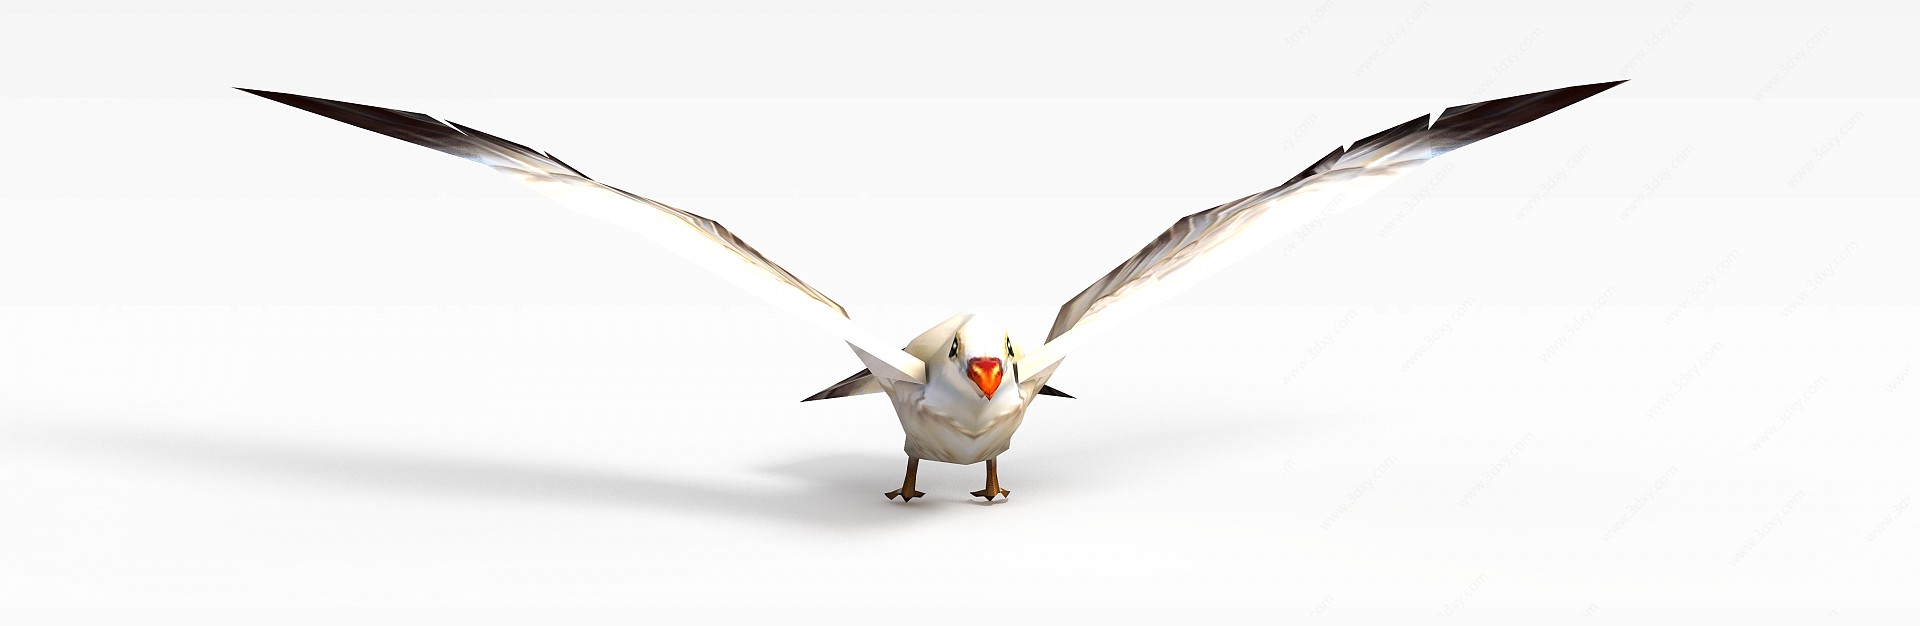 创世西游动漫游戏角色鸟3D模型